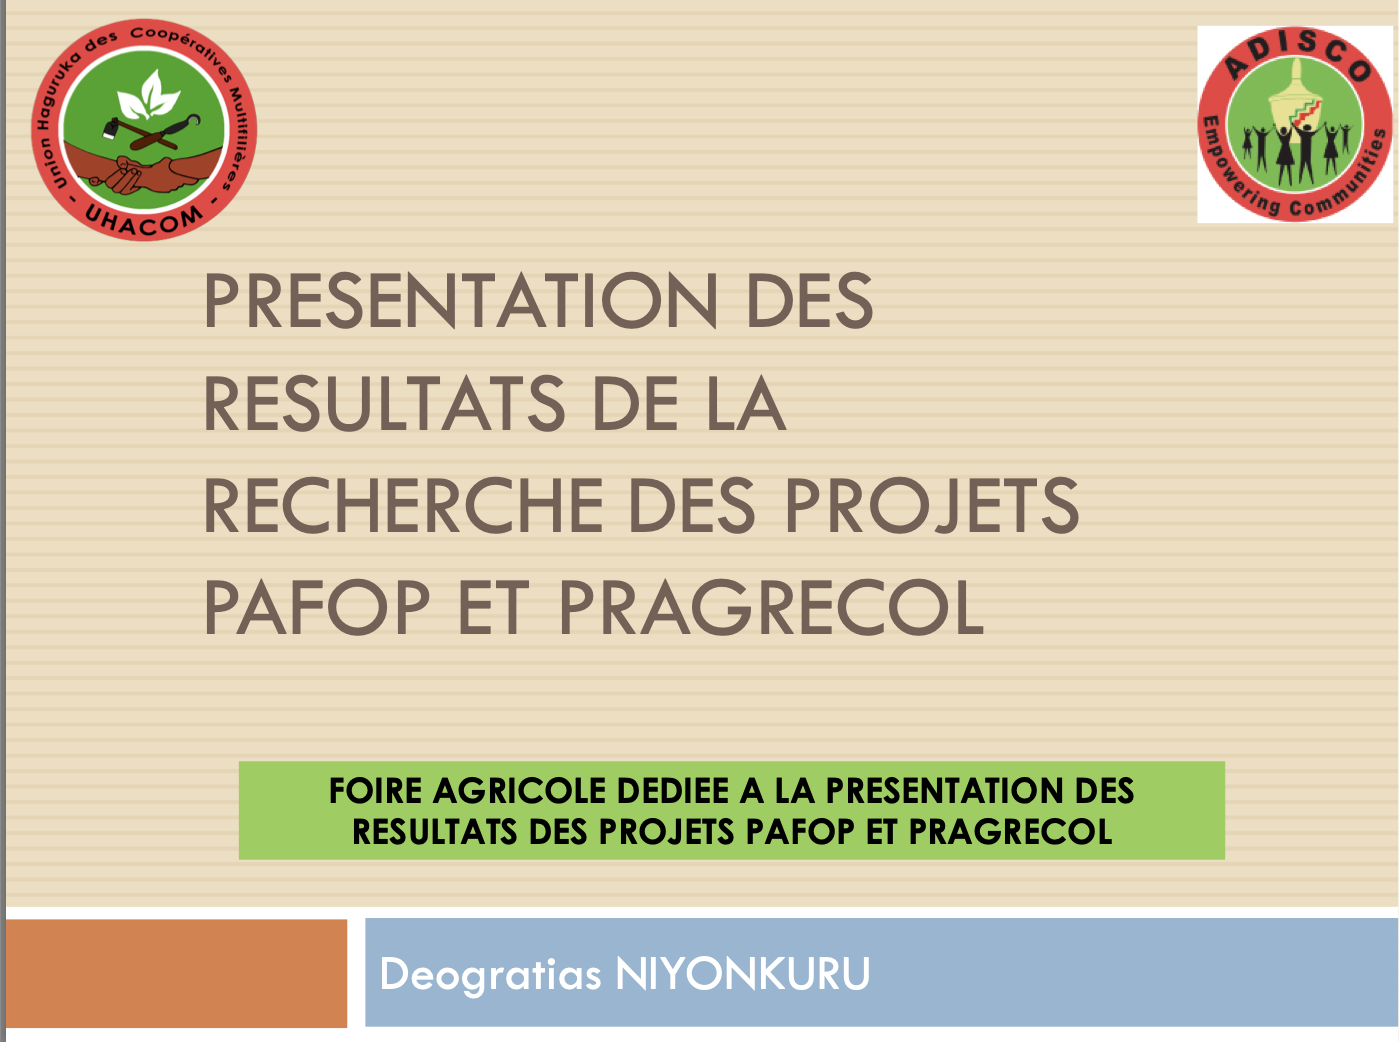 Innovations et Réseaux pour le Développement IRED présente les résultats de la recherche des projets PAFOP et PRAGRECOL